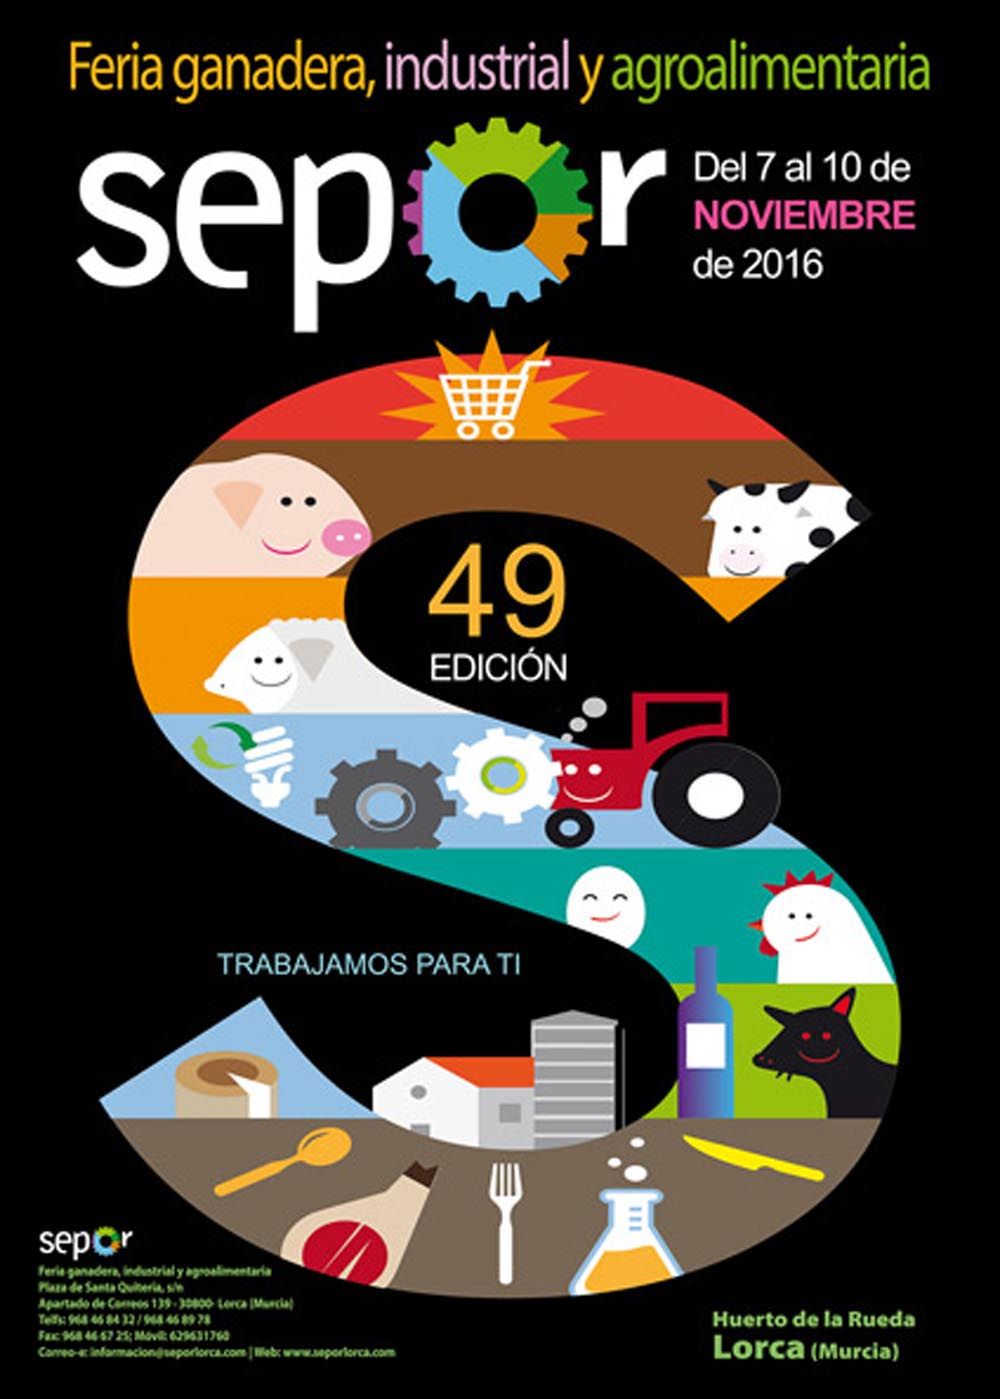 Sepor y el grupo agriNews reunirá en Lorca a más de 200 profesionales avícolas en el aviTOUR 2016